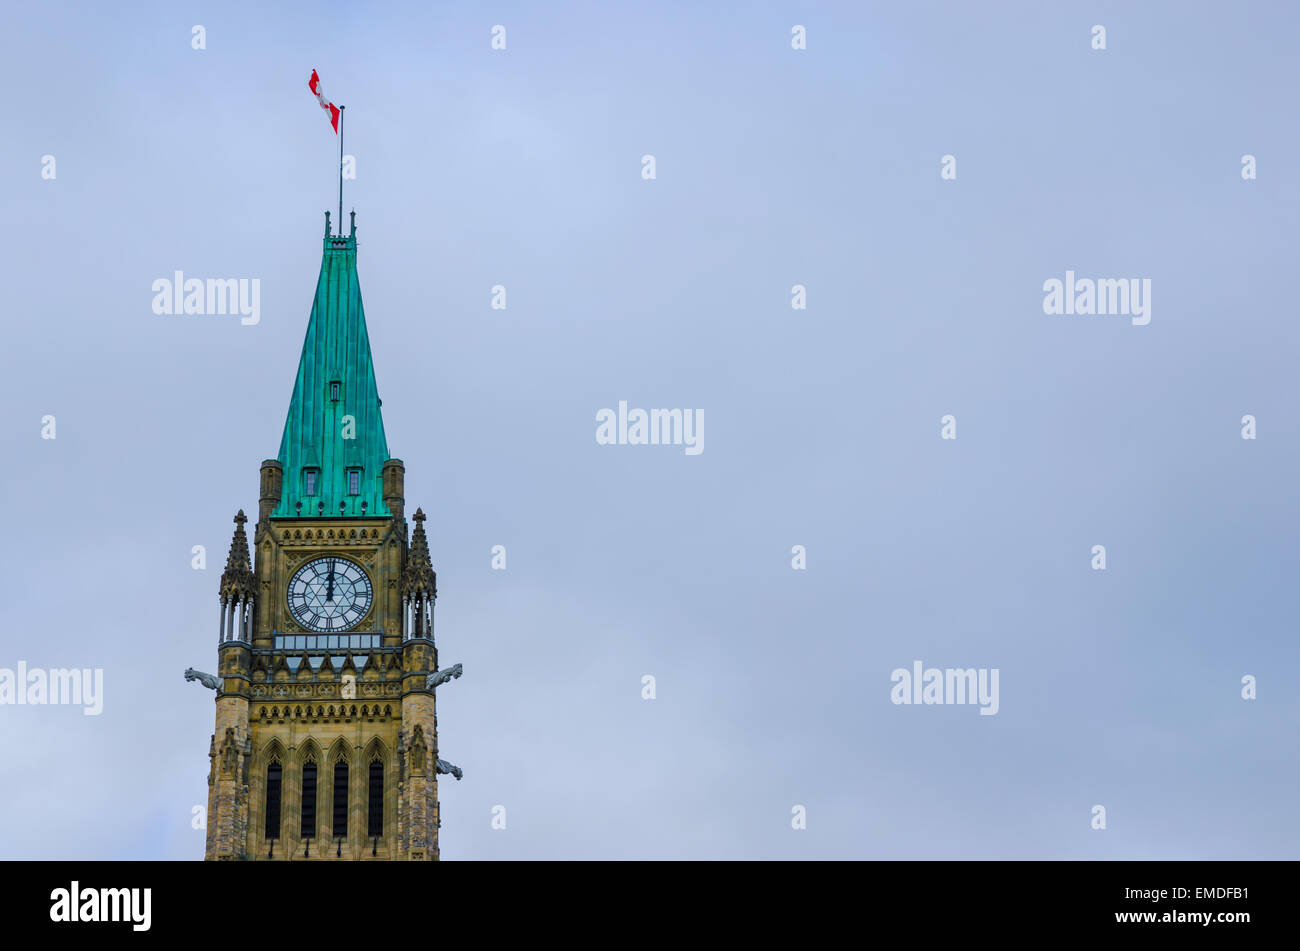 Parlament von Kanada am Parliament Hill in Ottawa. Nahaufnahme von der Peace Tower mit kanadischen Flagge oben. Stockfoto